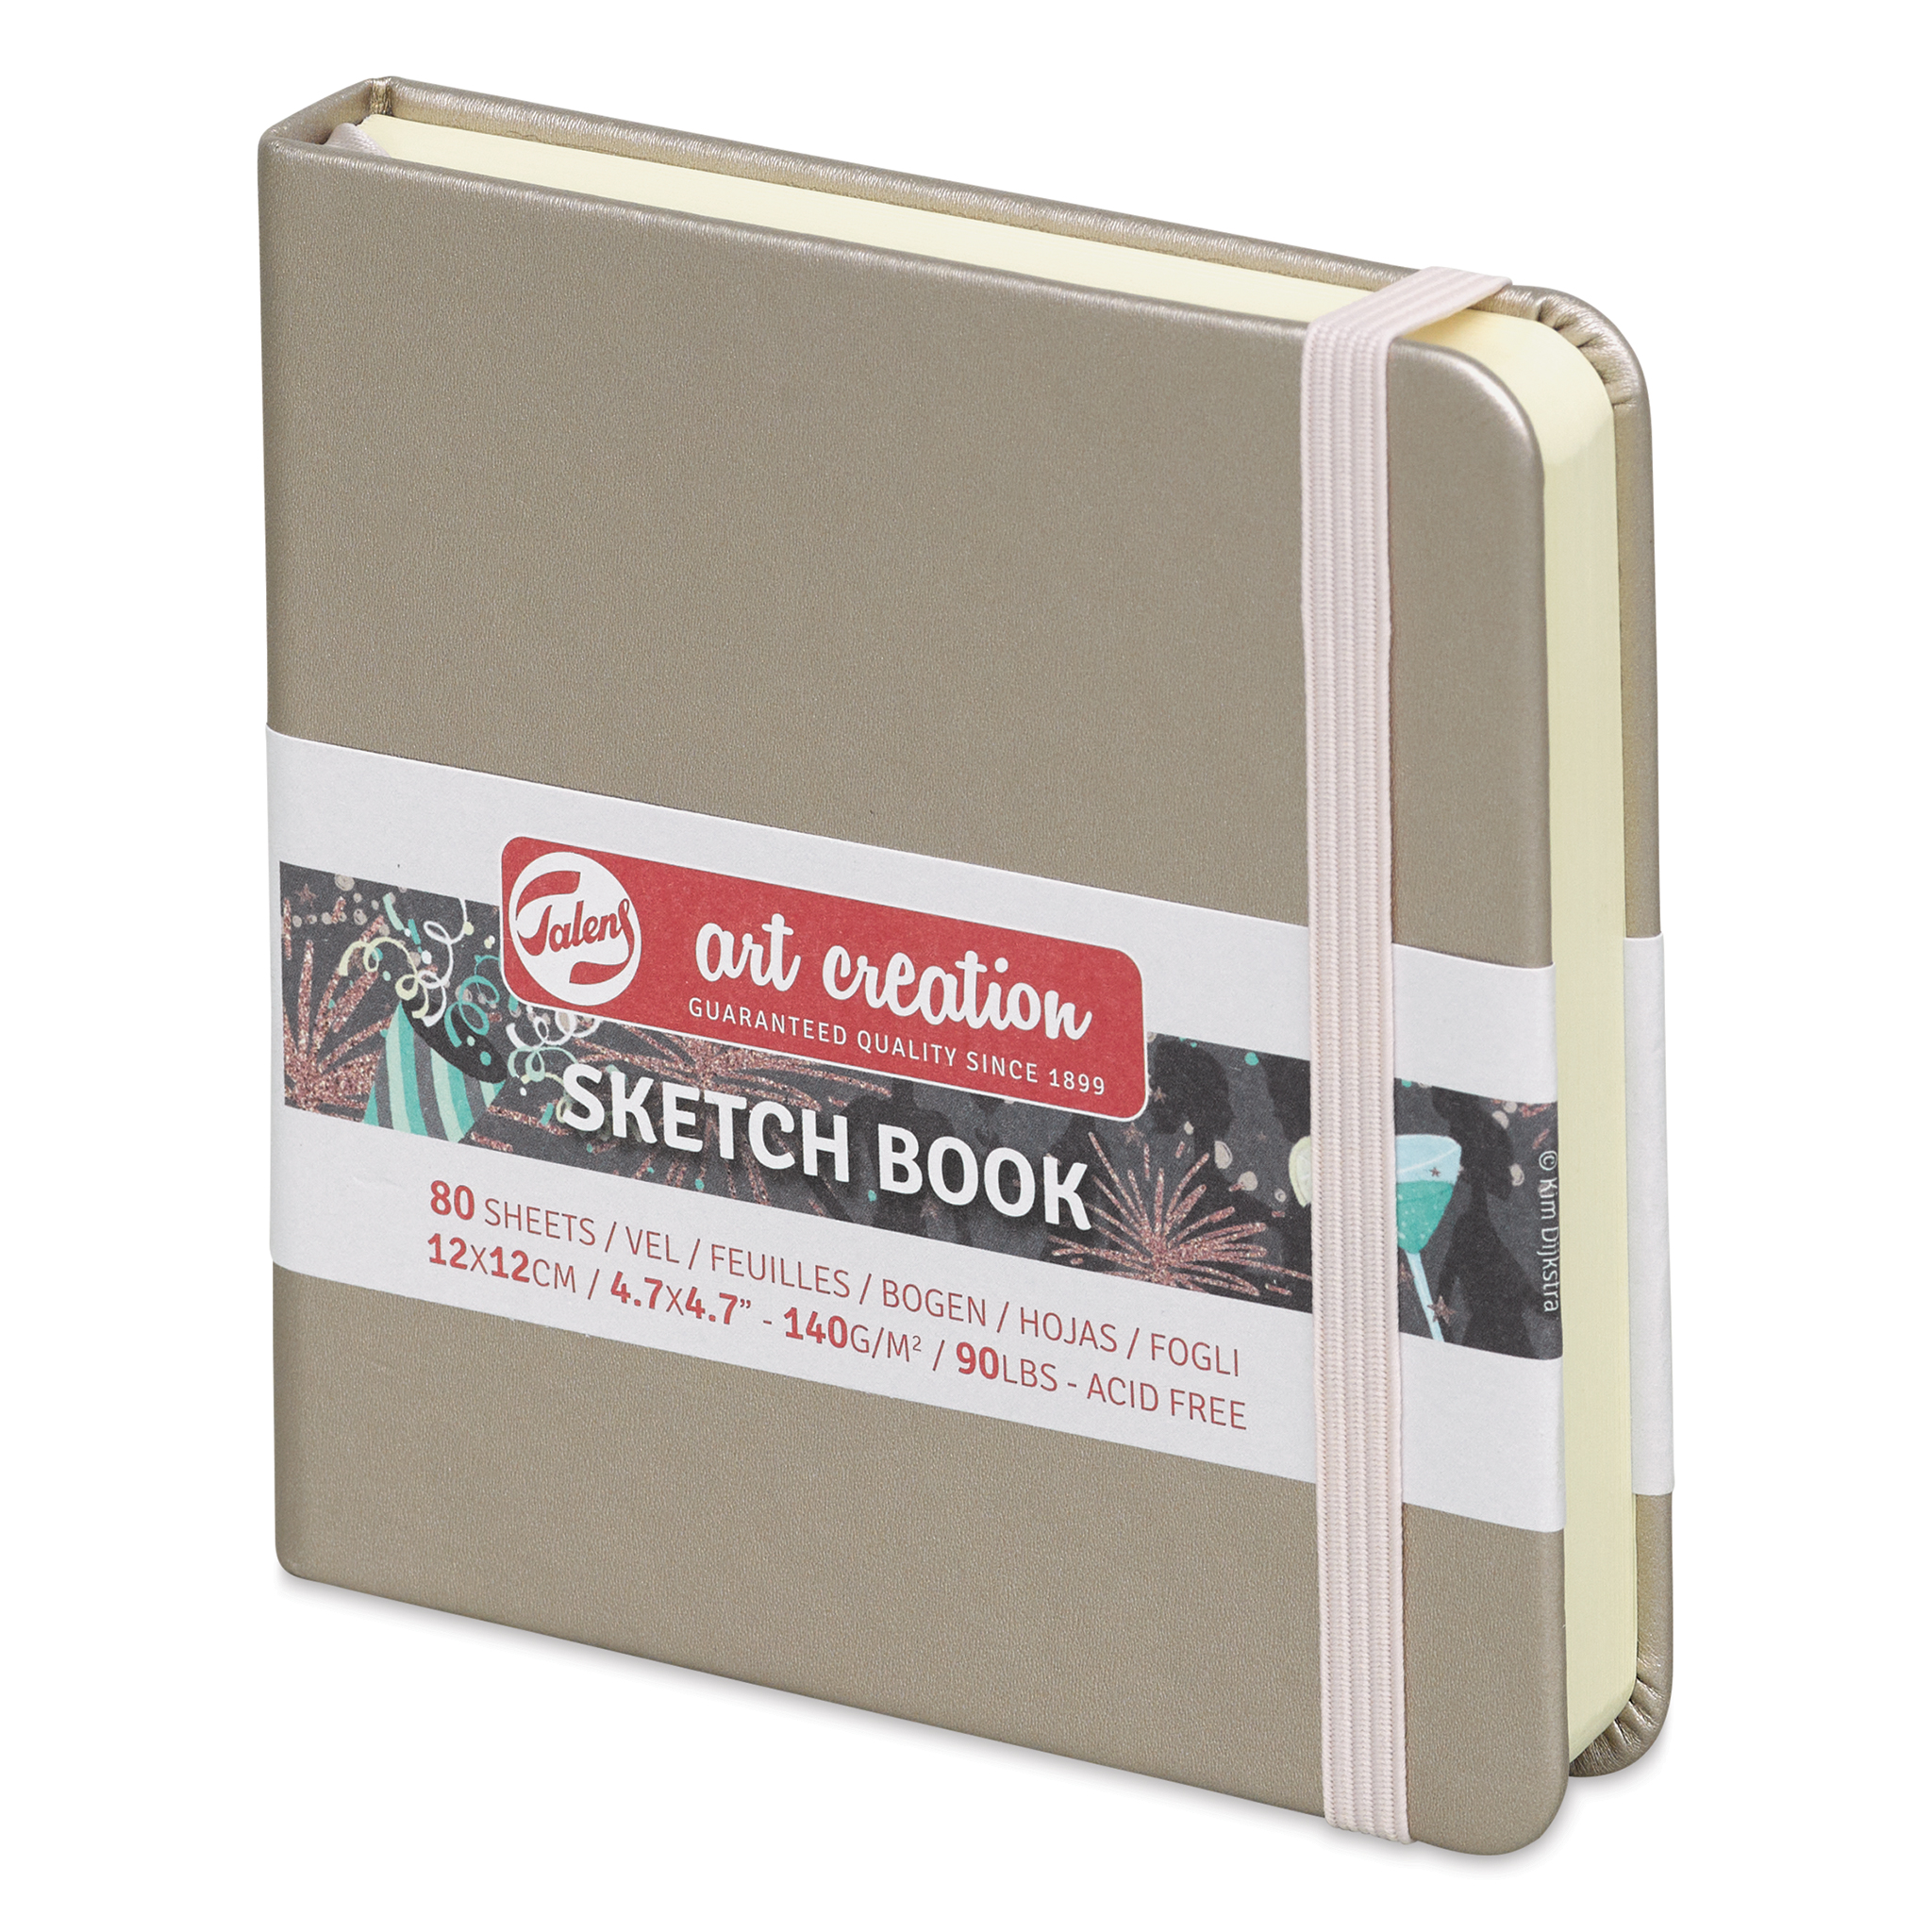 Talens Art Creation Sketchbook - Mint - 5x8.25